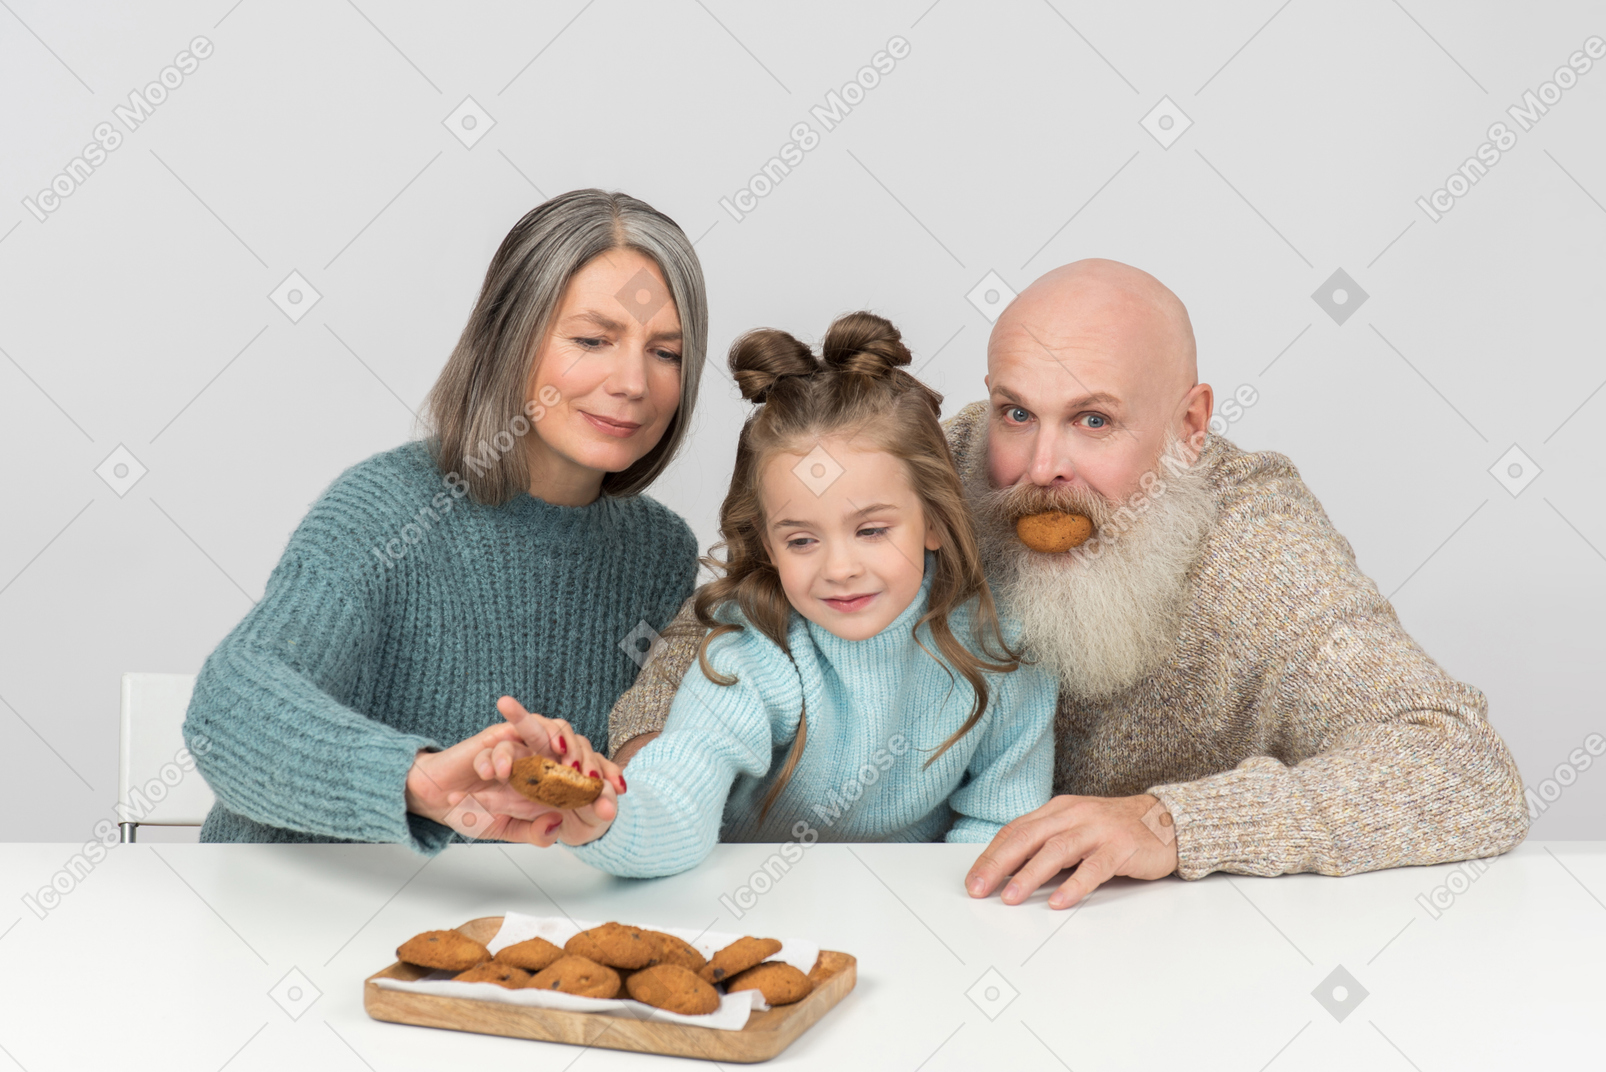 Nonno non può smettere di scherzare e la nonna impedisce al bambino di avere un altro biscotto